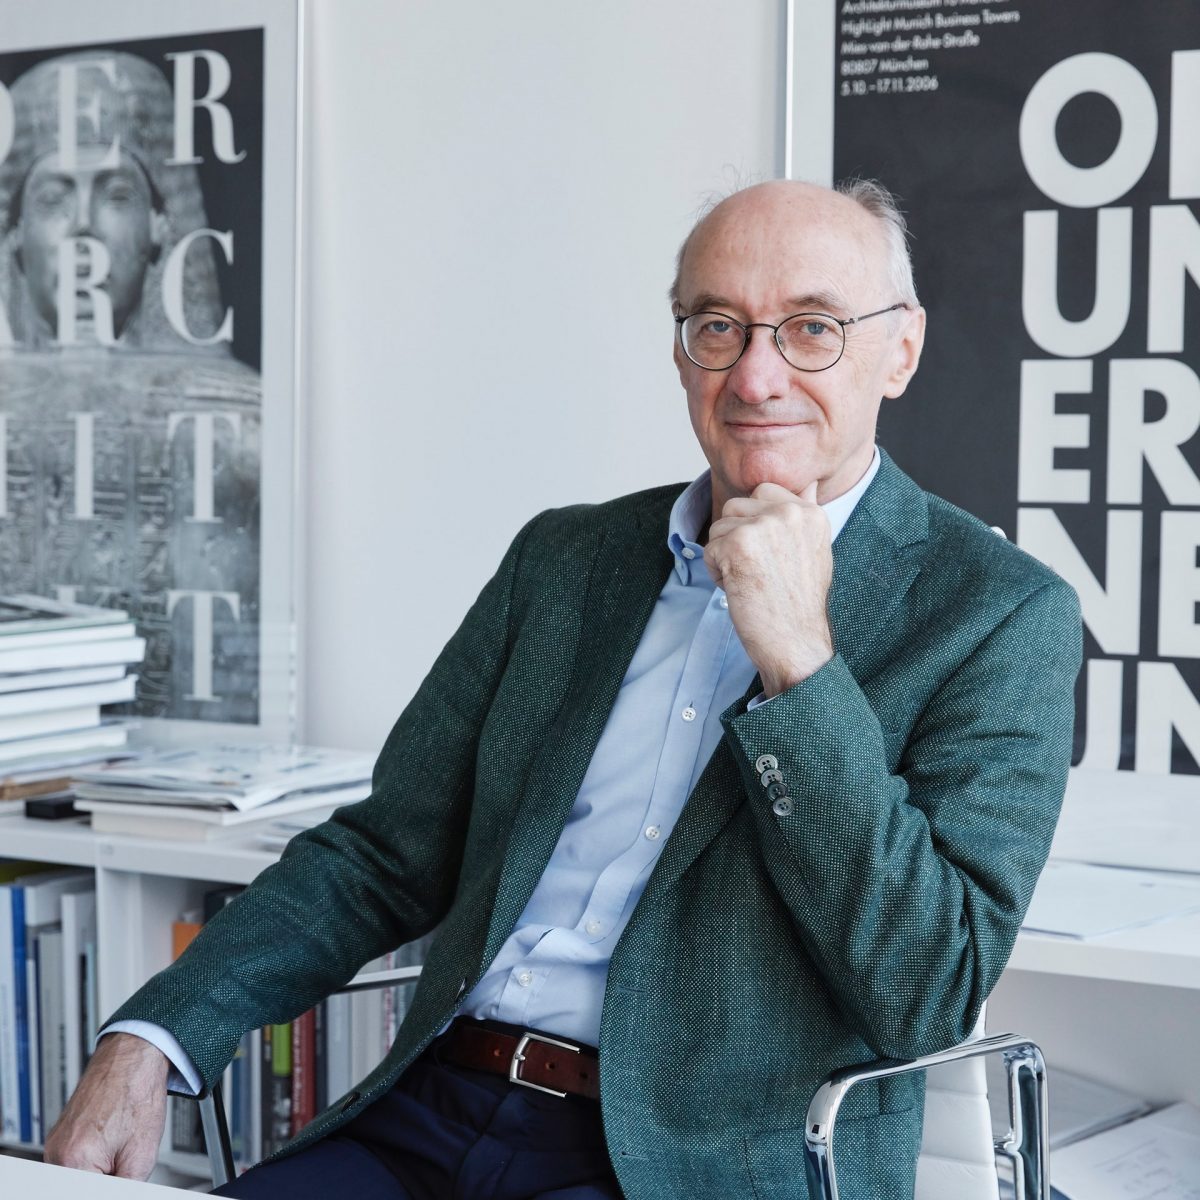 TUM Alumnus Prof. Winfried Nerdinger im NS-Dokumentationszentrum München.